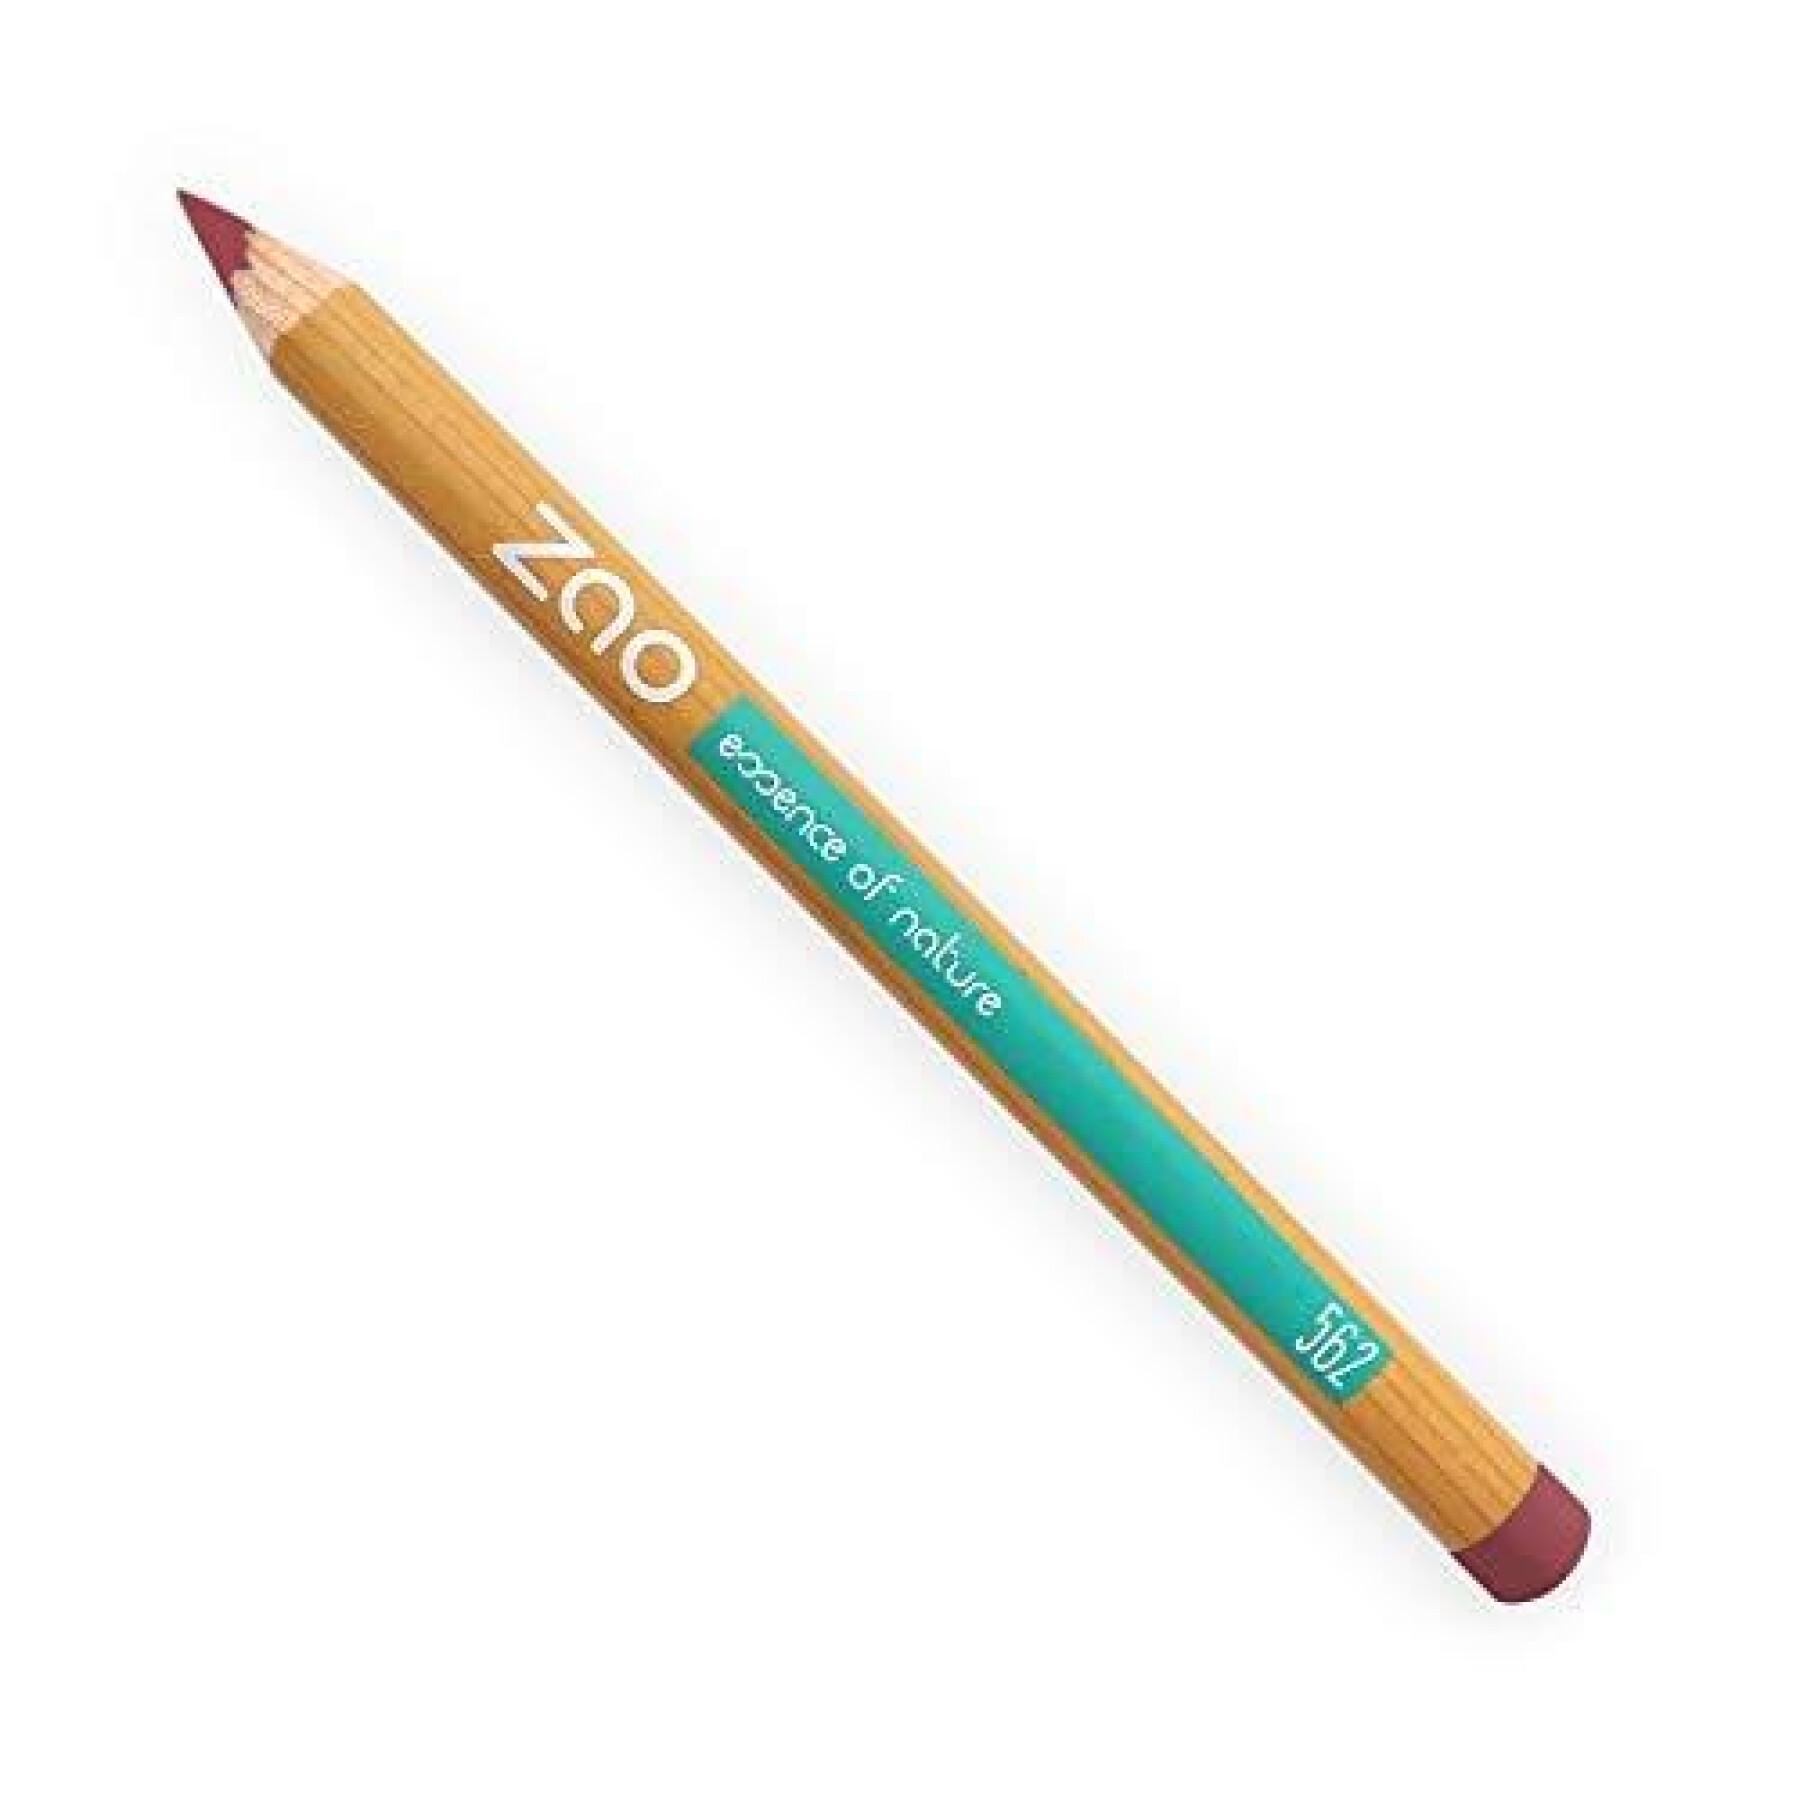 Crayon multi usage 562 bois de rose femme Zao